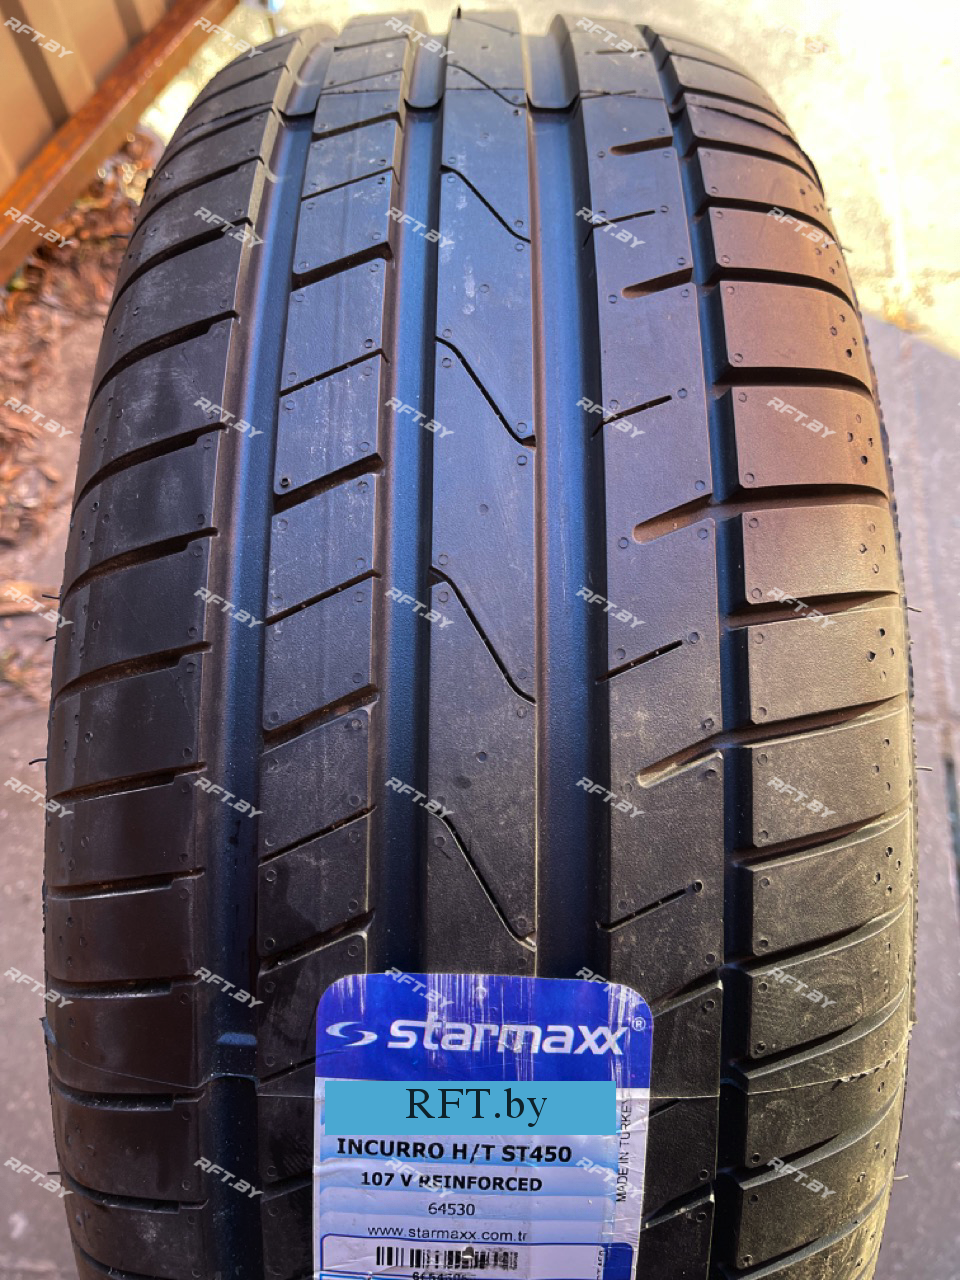 Starmaxx Incurro H/T ST450 255/55R19 111V